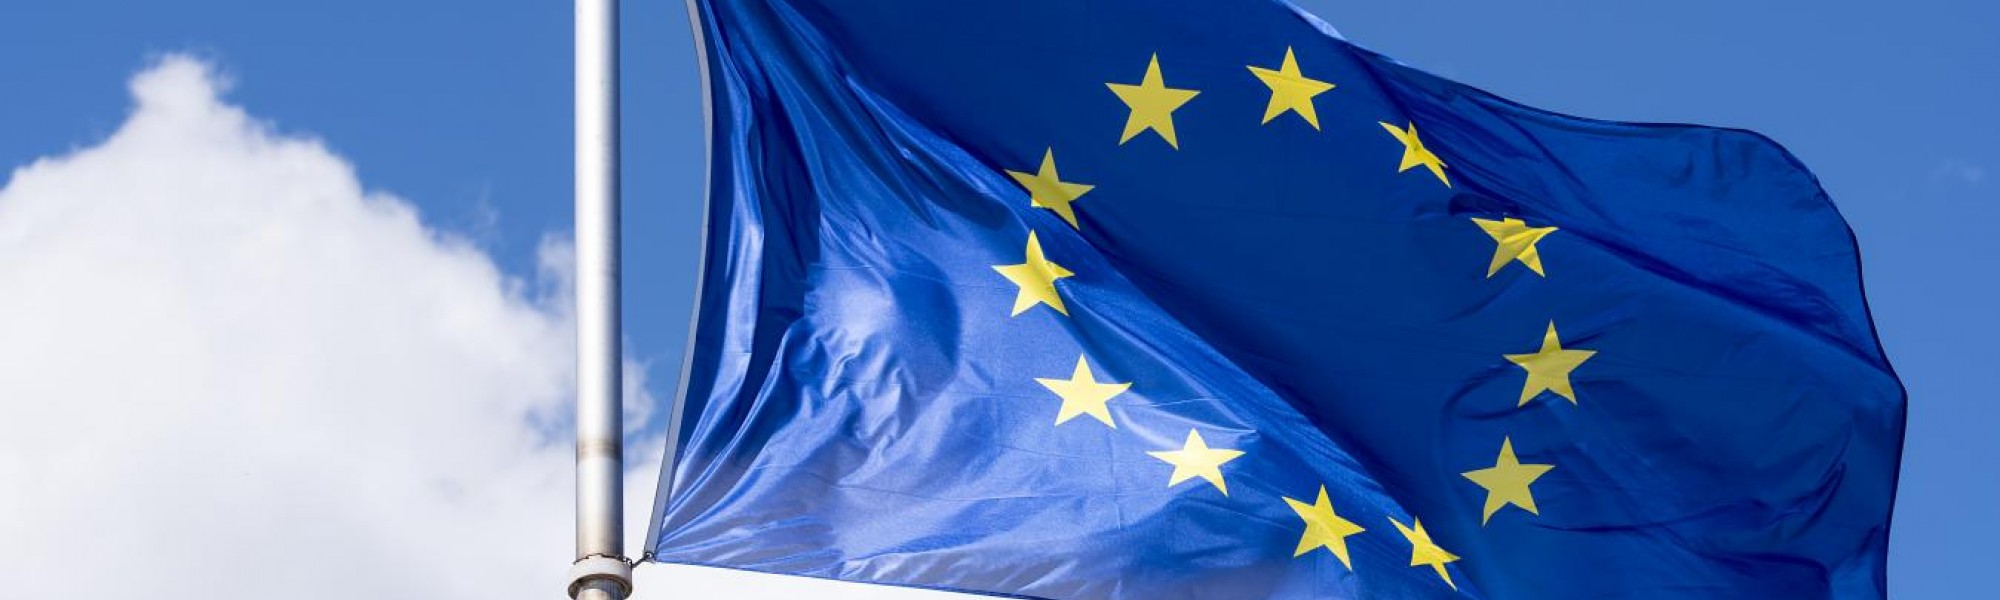 drapeau de l'Union européenne